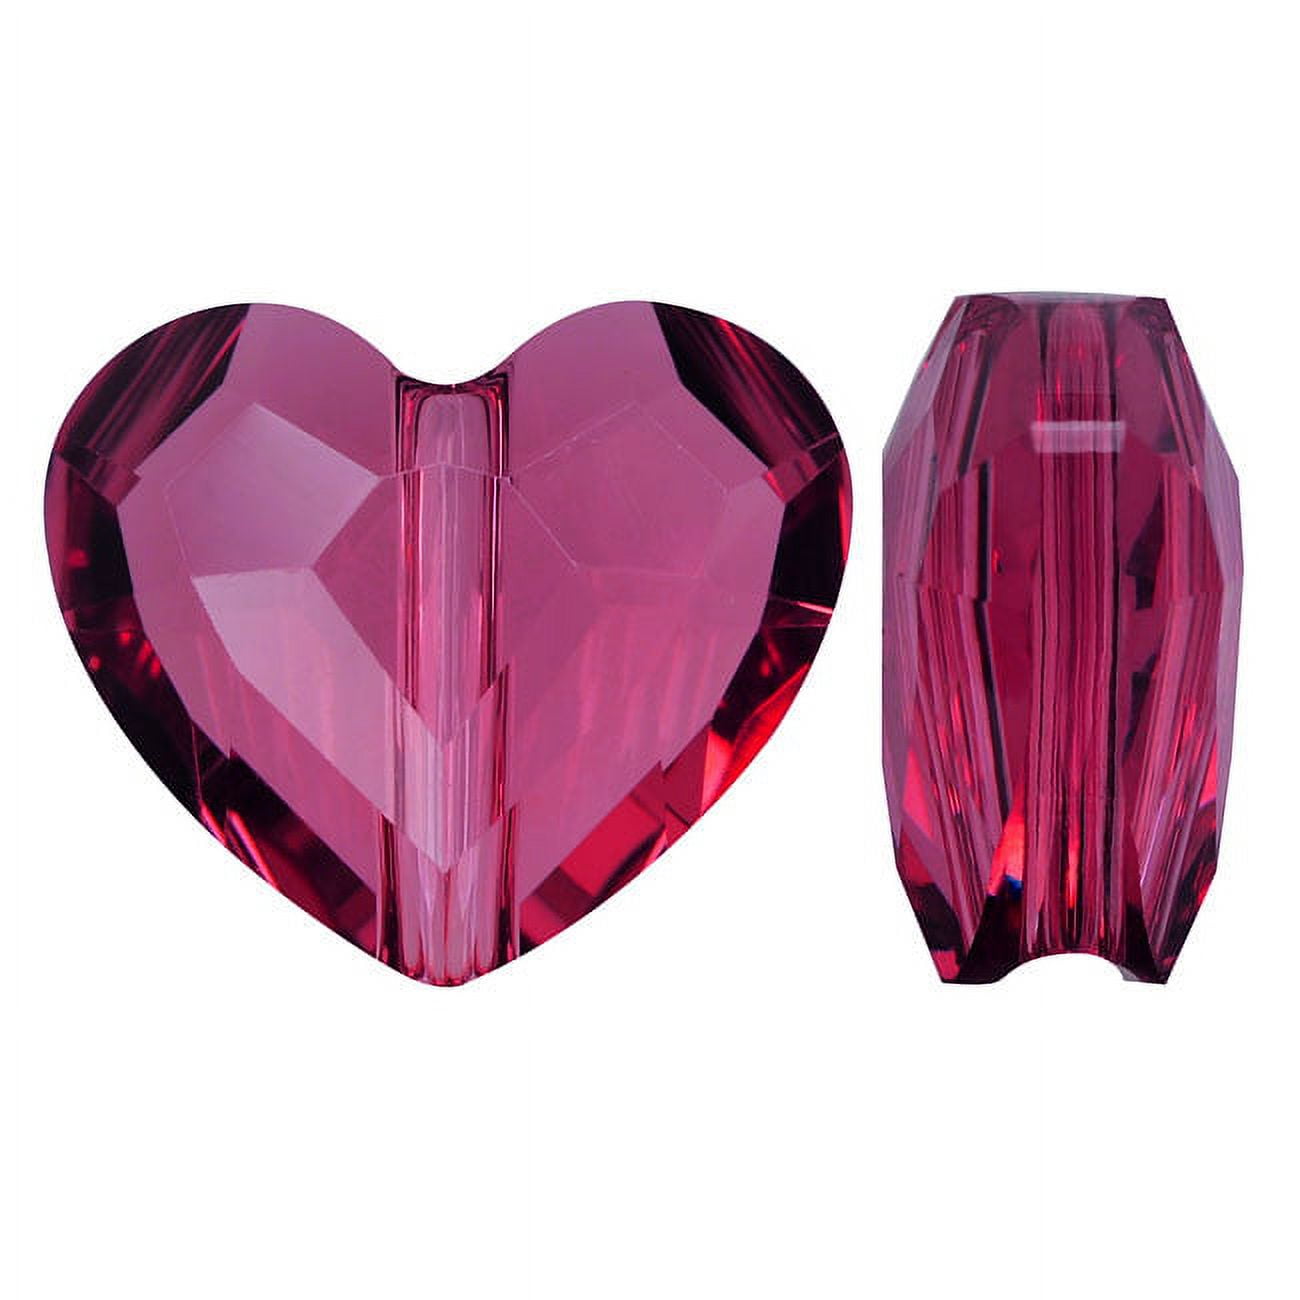 Fuchsia & Light Pink Heart Beads 12mm